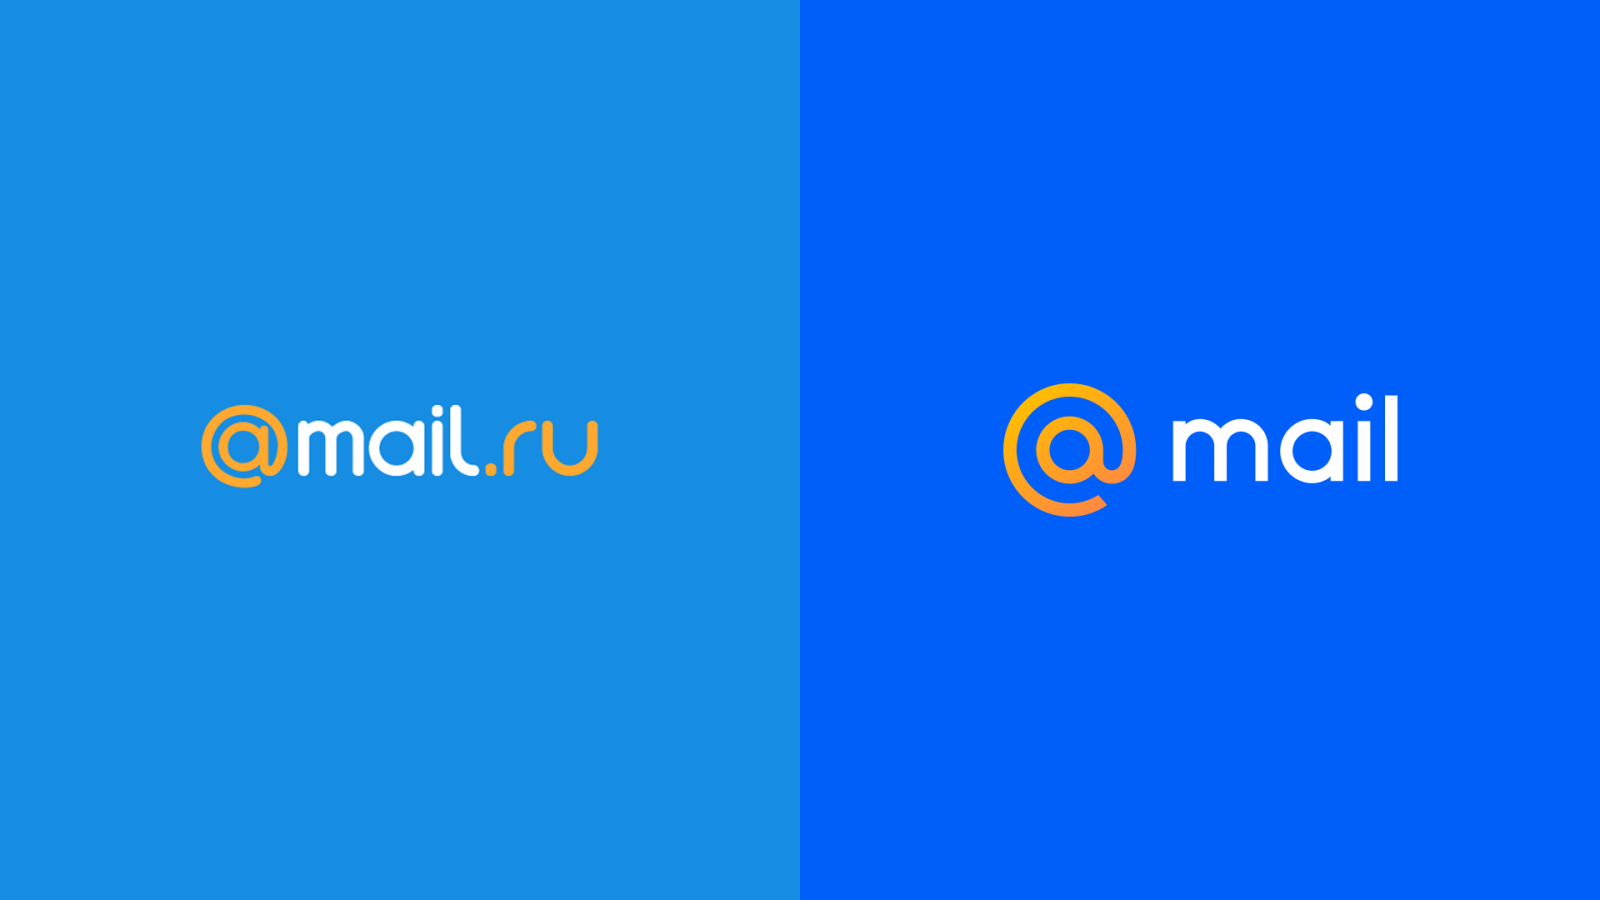 10 11 mail ru. Mail. Почта майл. Mail.ru лого. Логотип почты мейл.